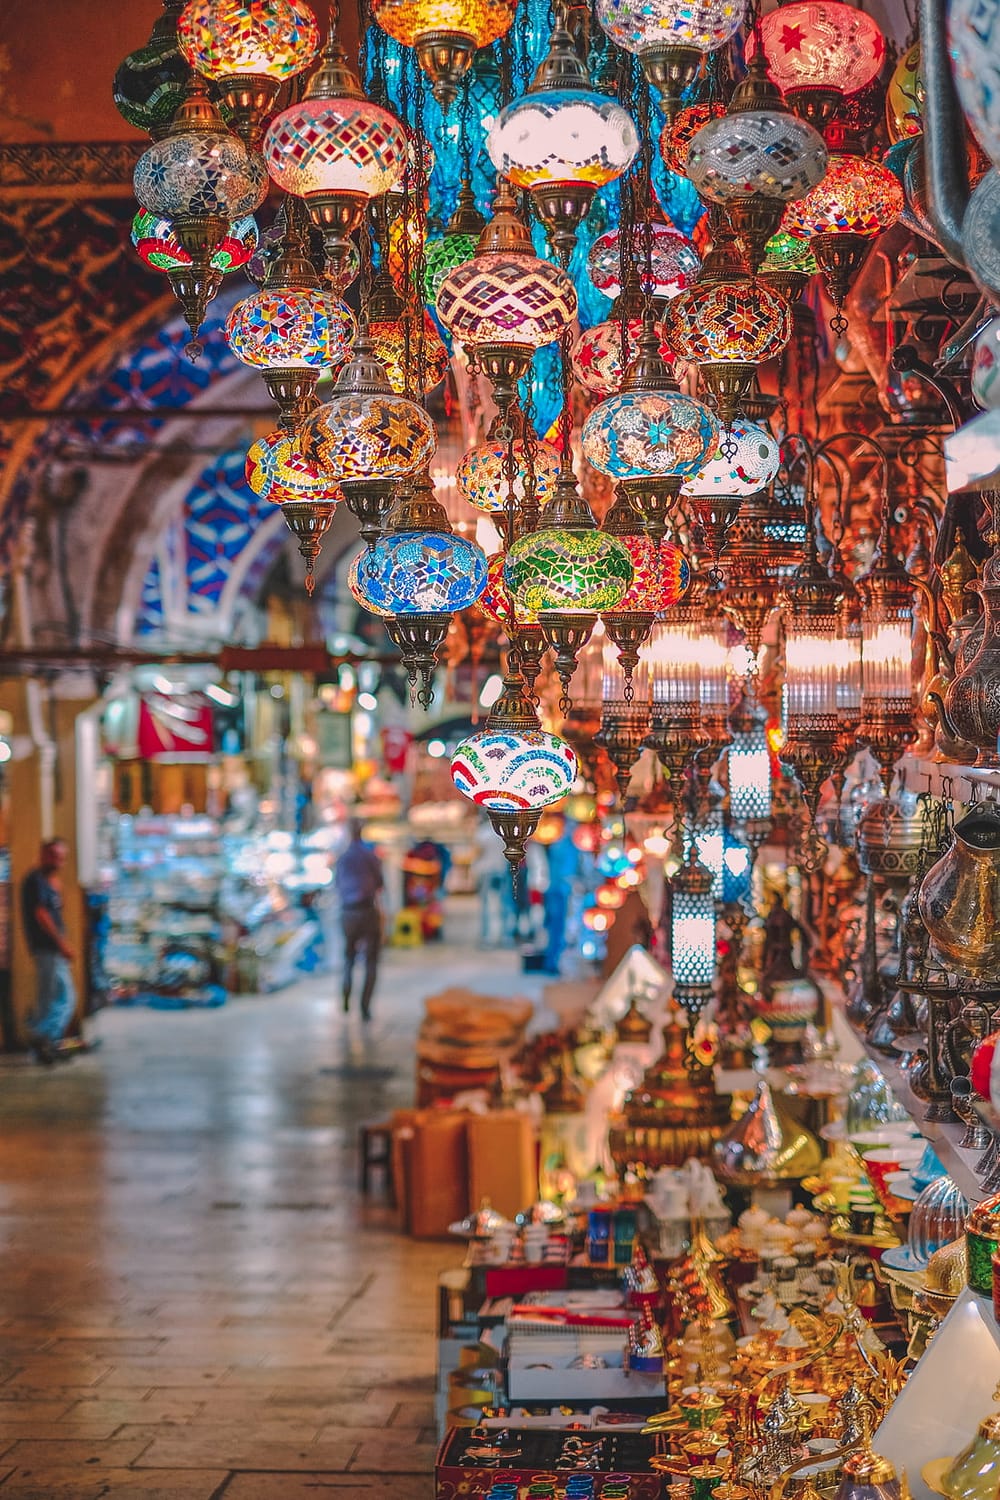 The Grand Bazaar in December